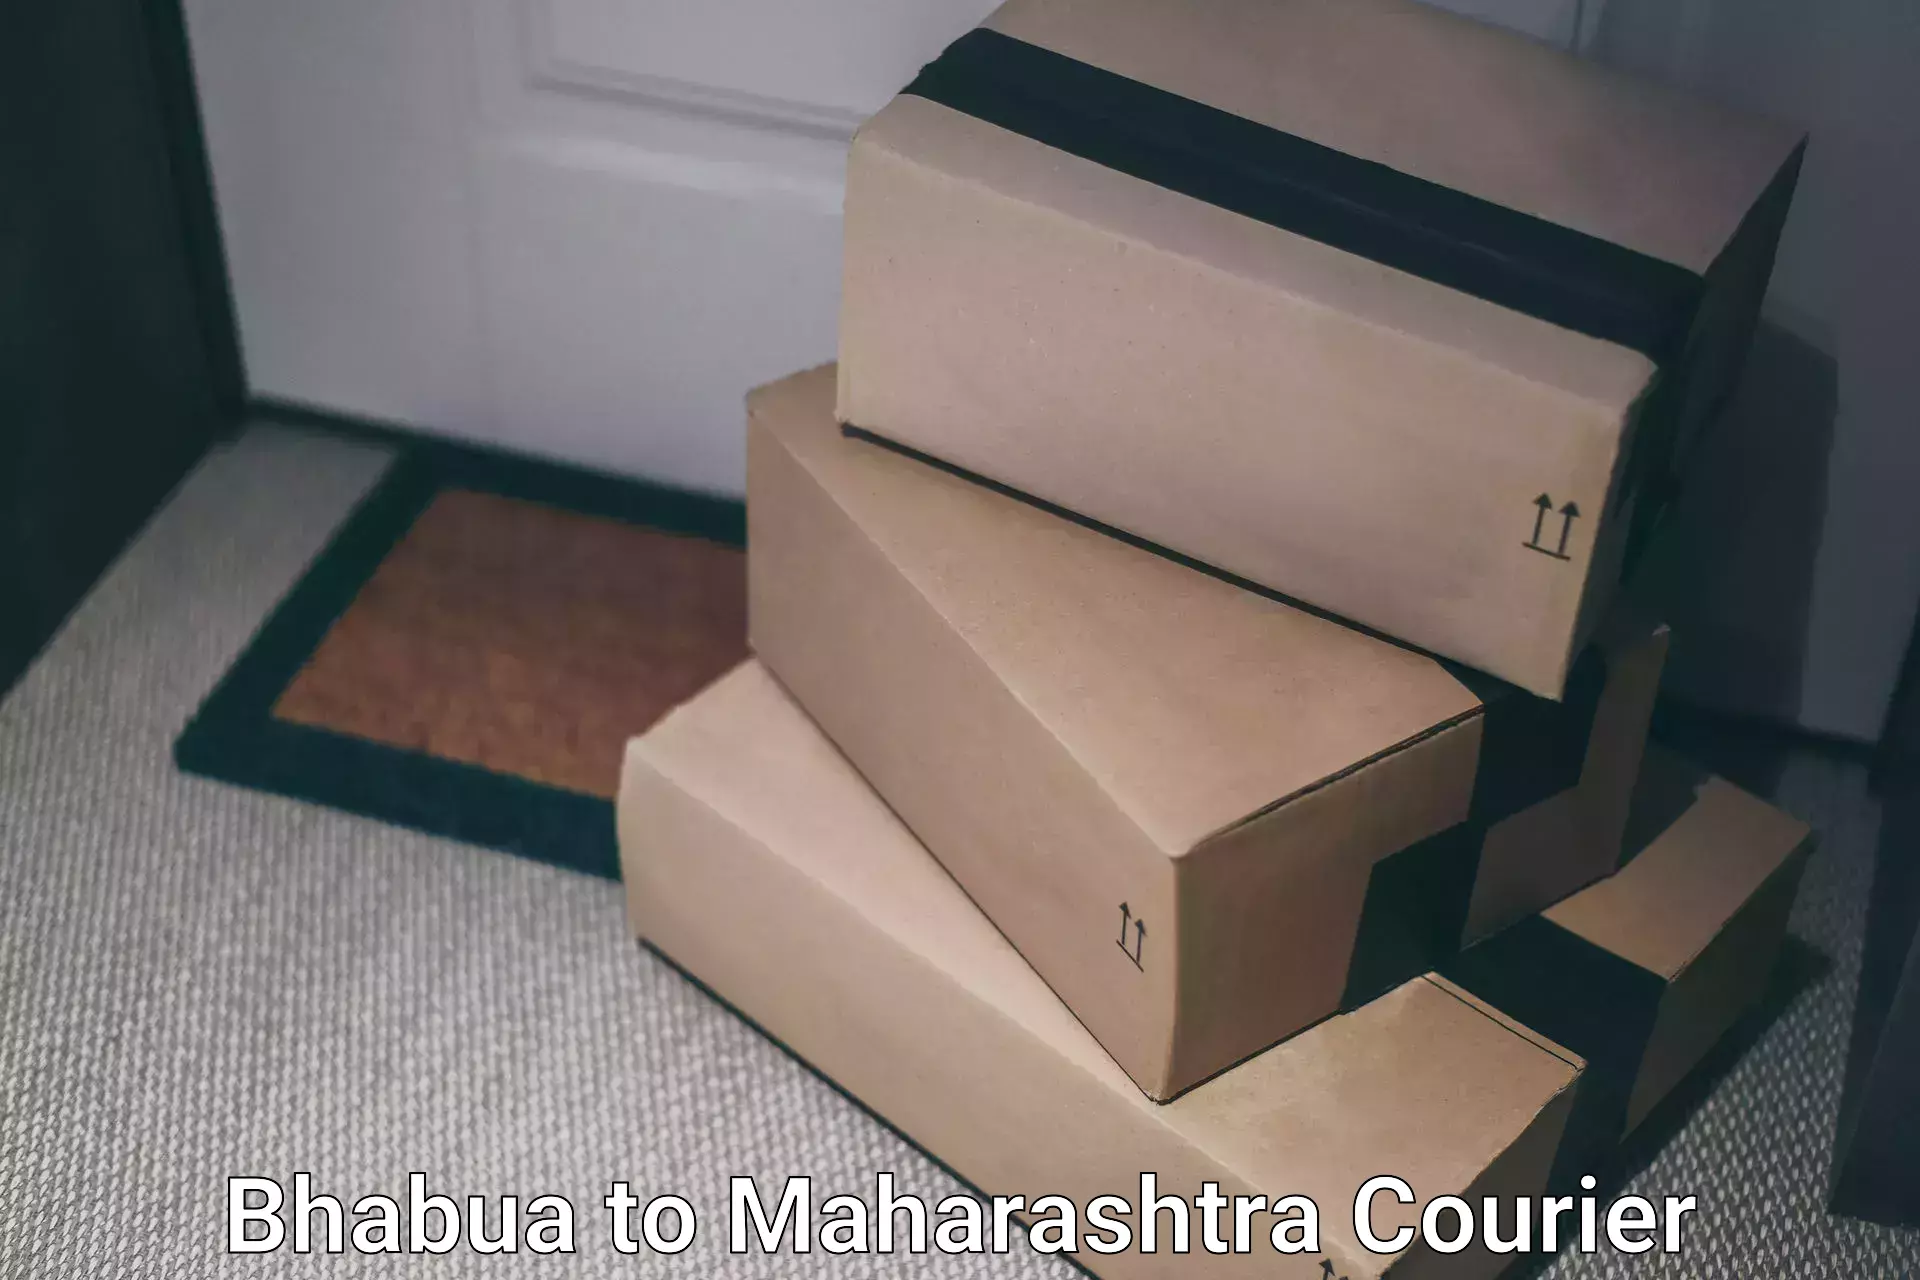 Express postal services Bhabua to Maharashtra